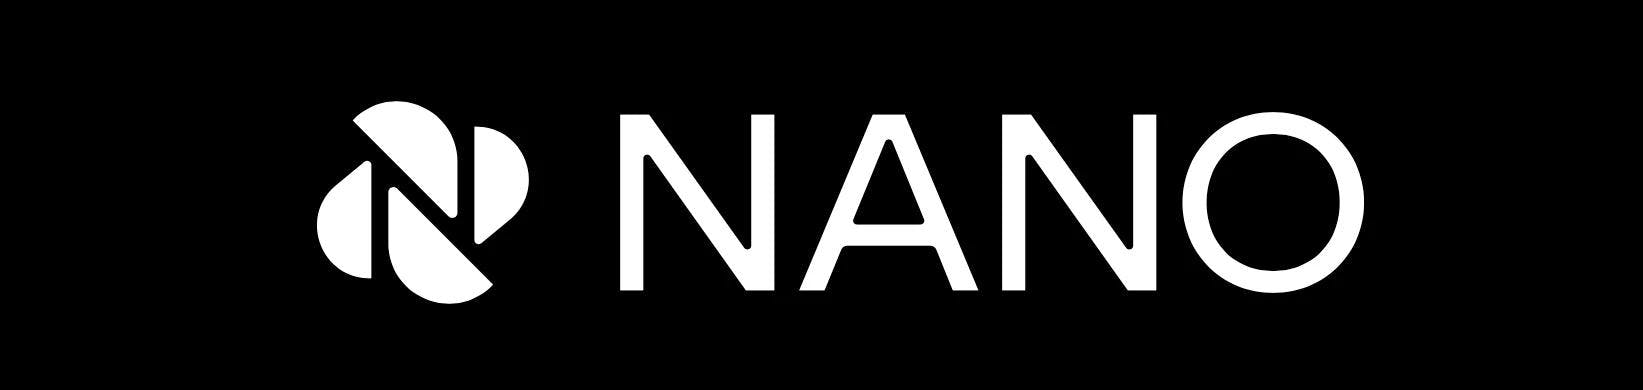 Nano's logo